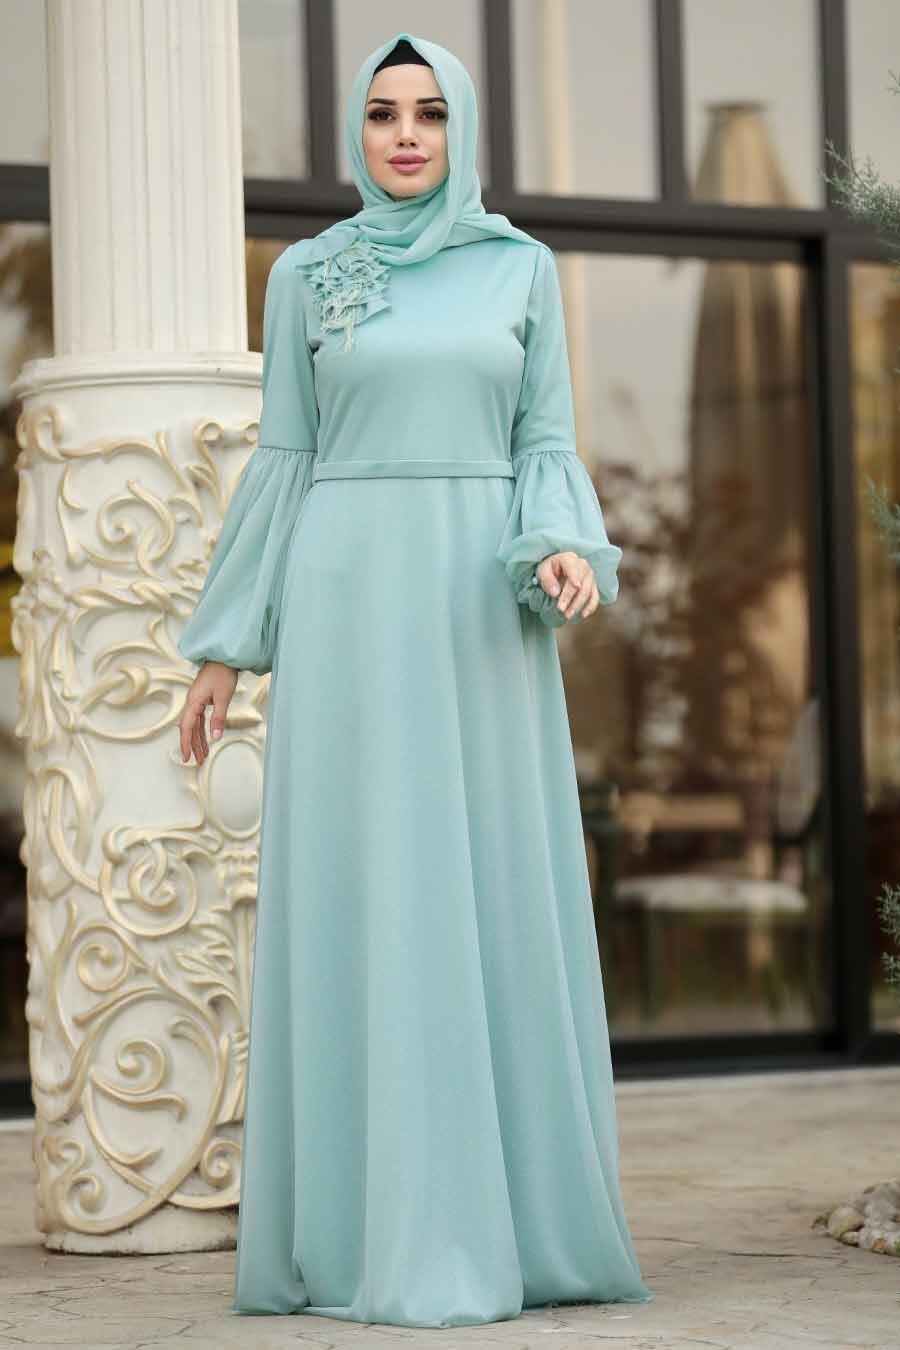 Hijab - stil 2022 Hijab-evening-dress-mint-hijab-evening-dress-39610mint-evening-dresses-tesetturlu-abiye-elbiseler-61155-22-B